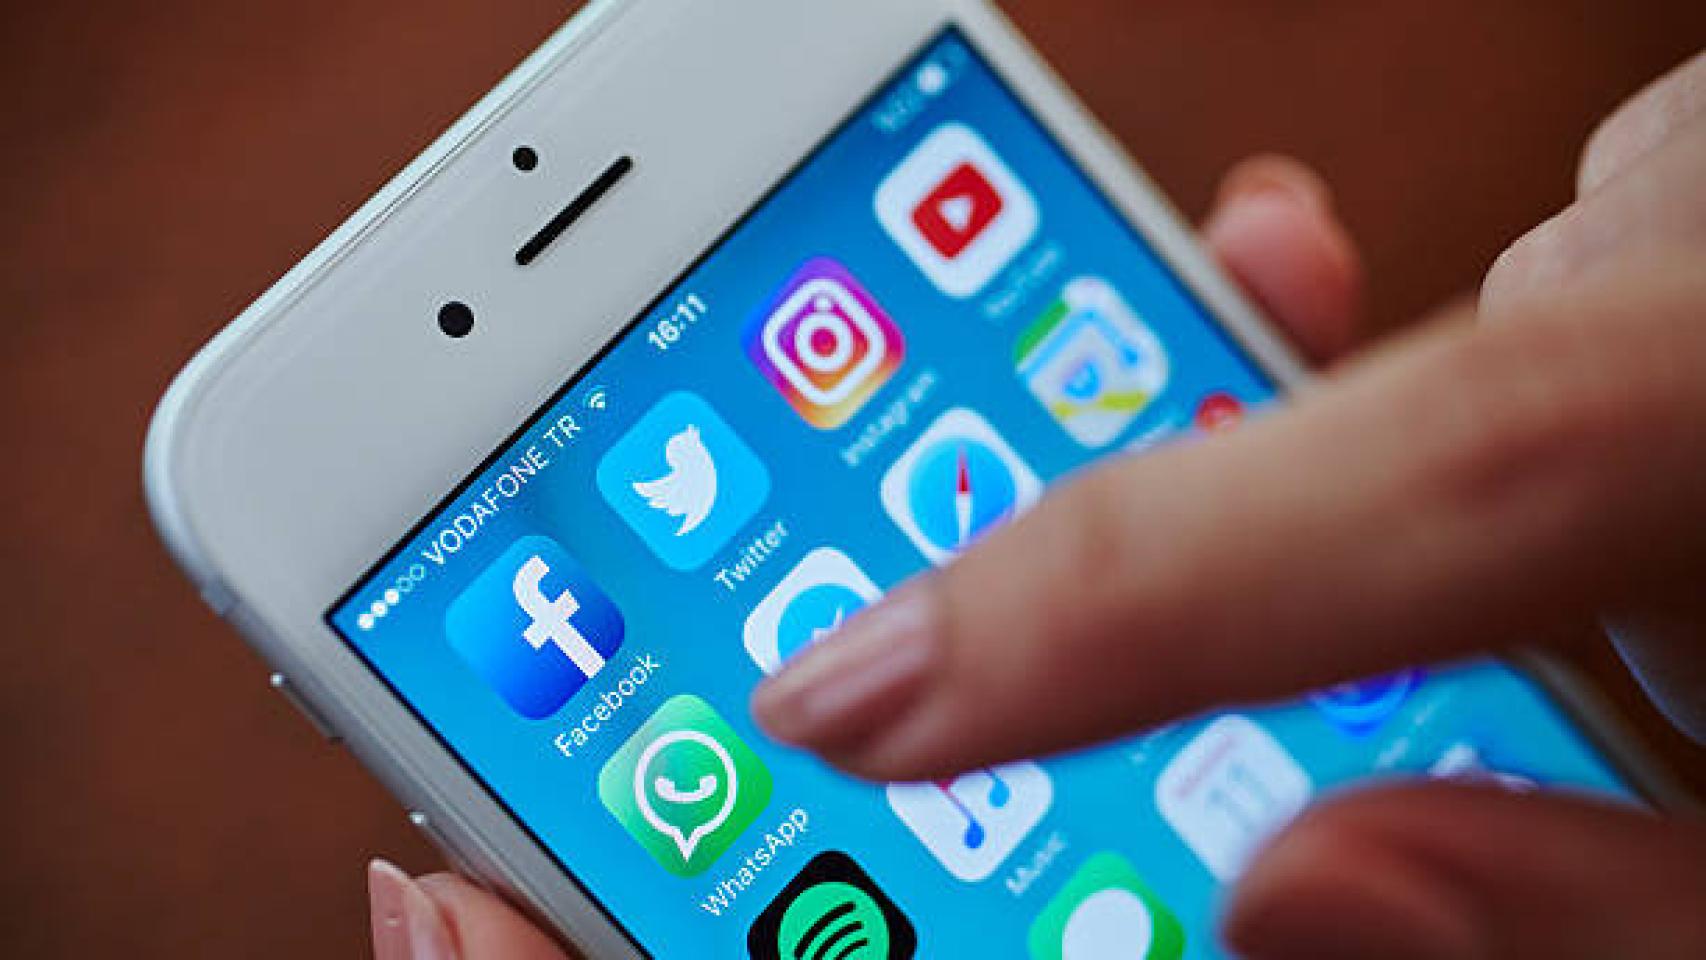 Adiós a WhatsApp en estos móviles: iPhone, Android y más afectados